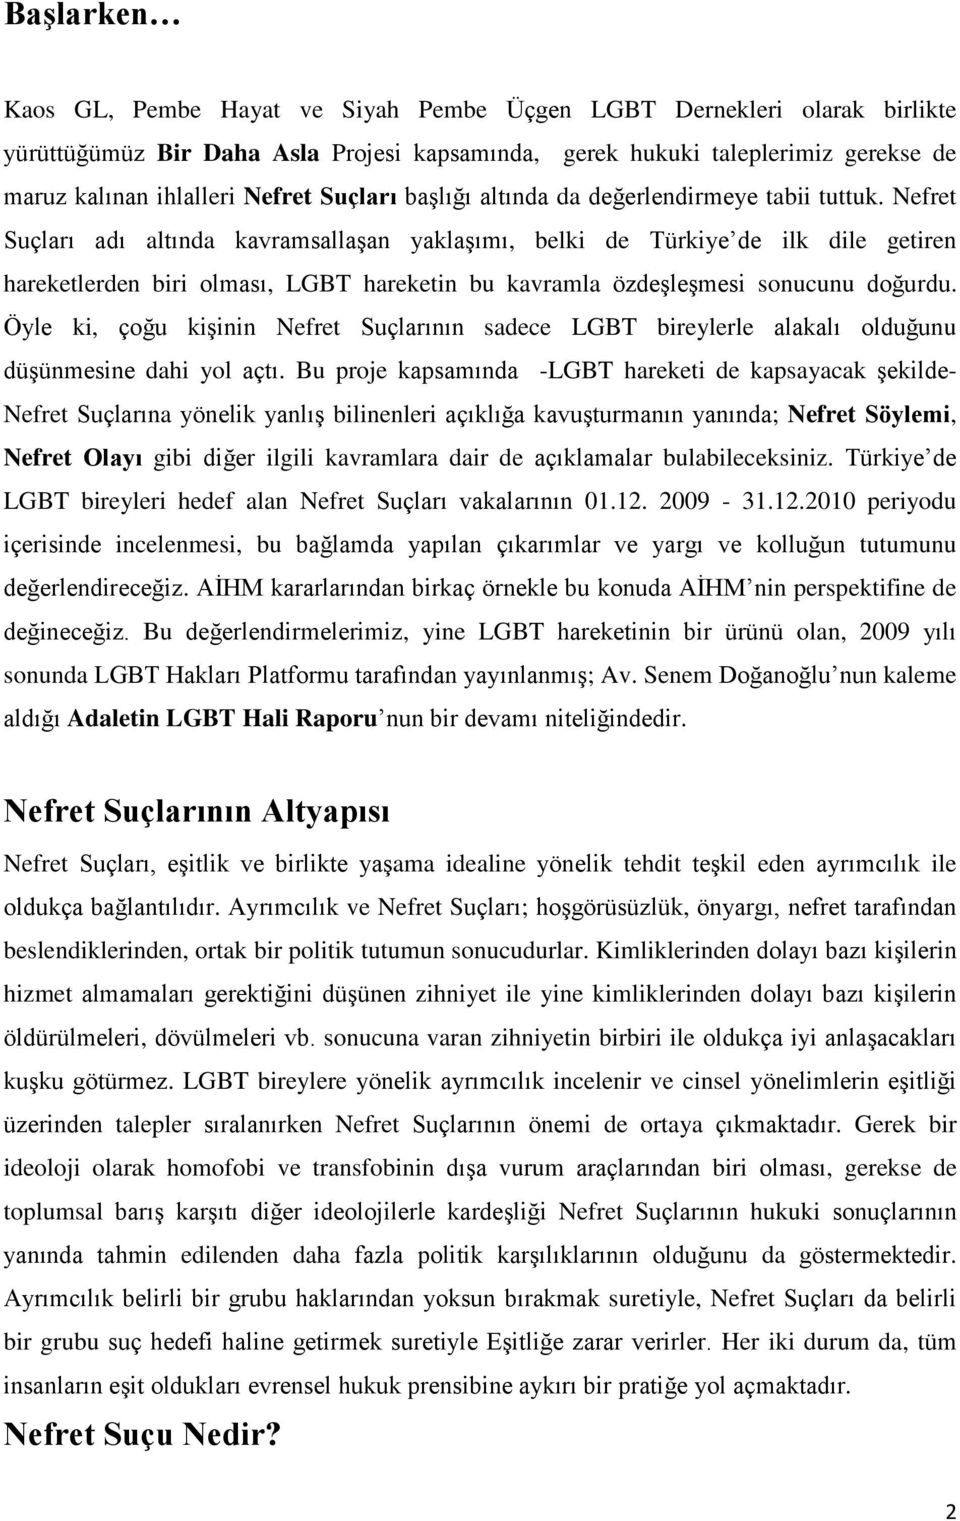 Nefret Suçları adı altında kavramsallaşan yaklaşımı, belki de Türkiye de ilk dile getiren hareketlerden biri olması, LGBT hareketin bu kavramla özdeşleşmesi sonucunu doğurdu.